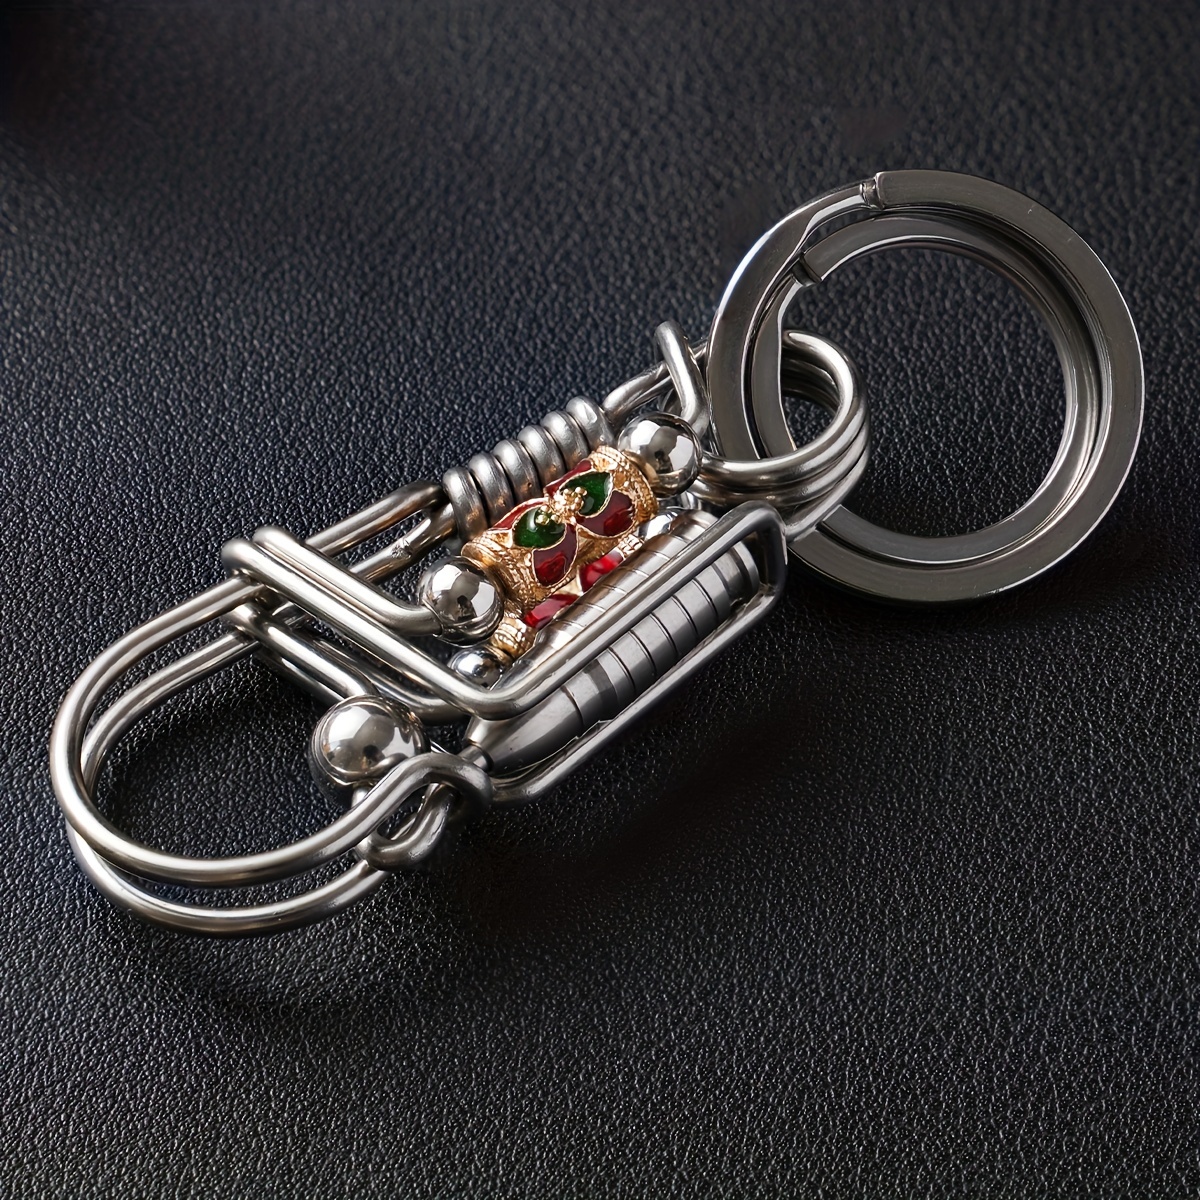 

Porte-clés en acier inoxydable fait à la main, porte-clés créatif pour hommes, choix idéal pour les cadeaux